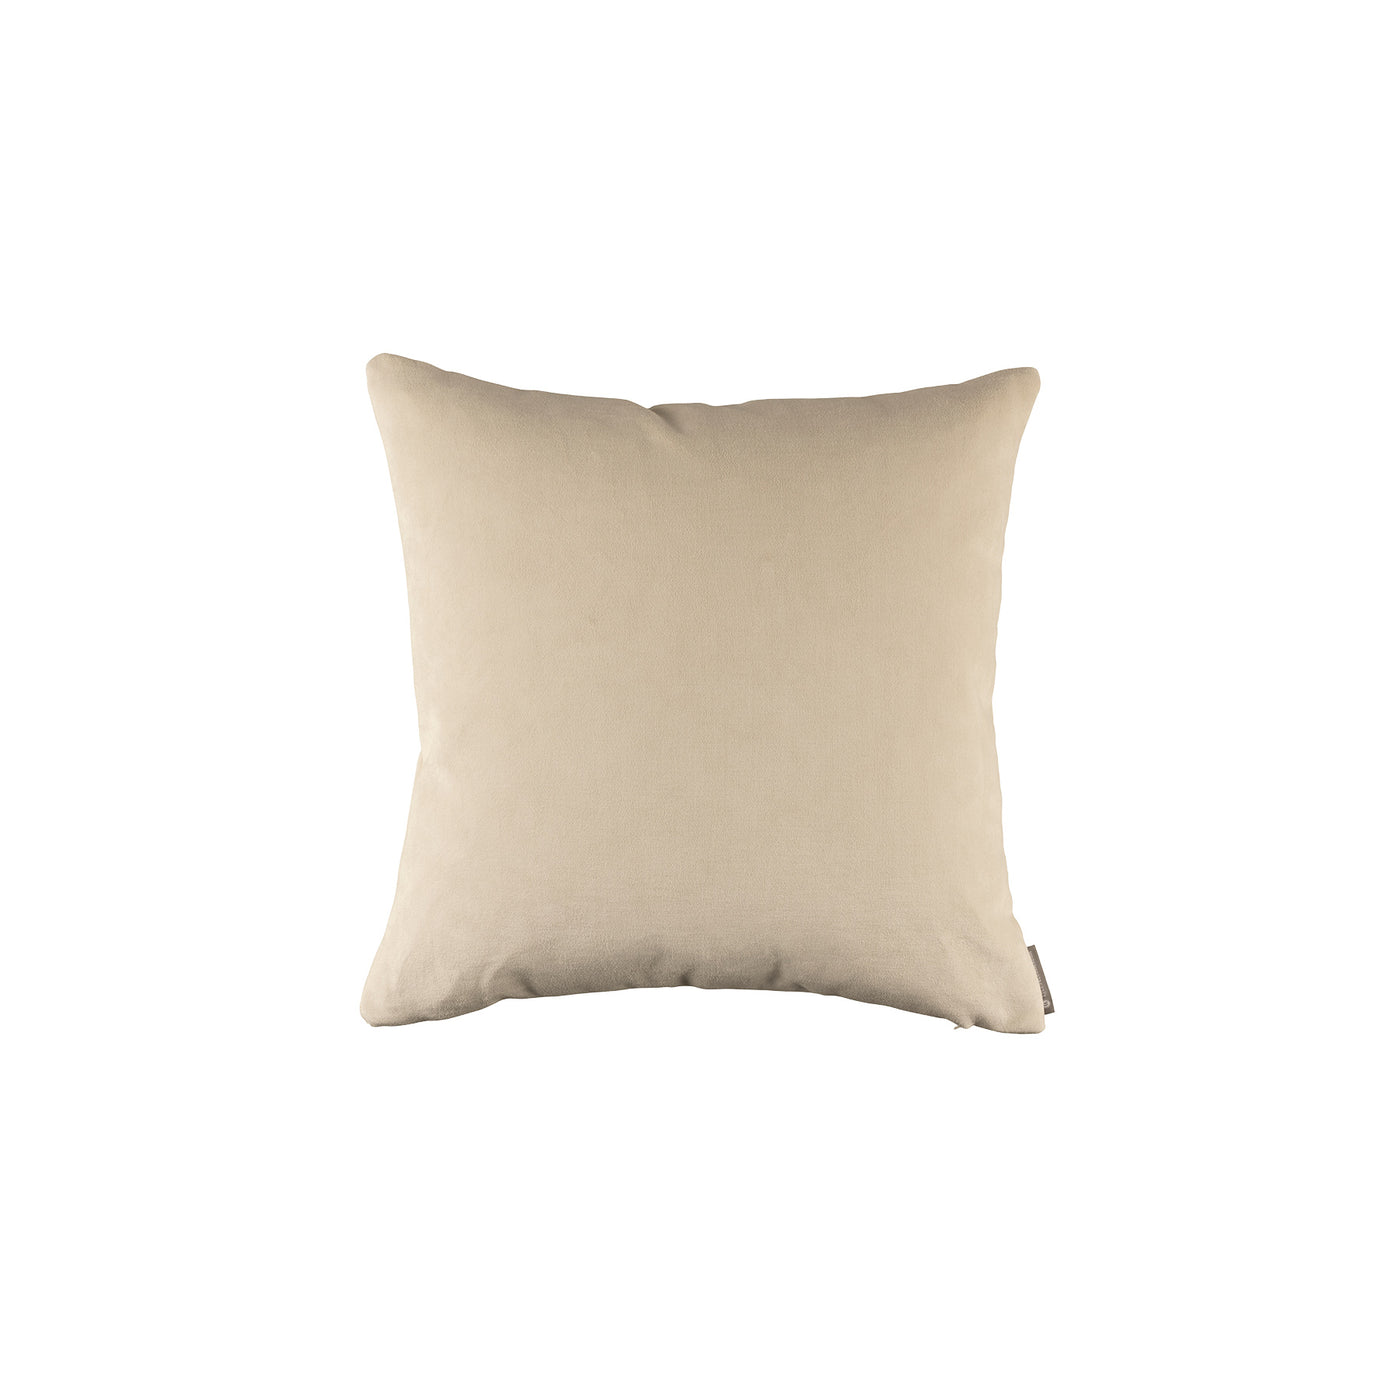 Mia Ivory Small Square Pillow (22x22)